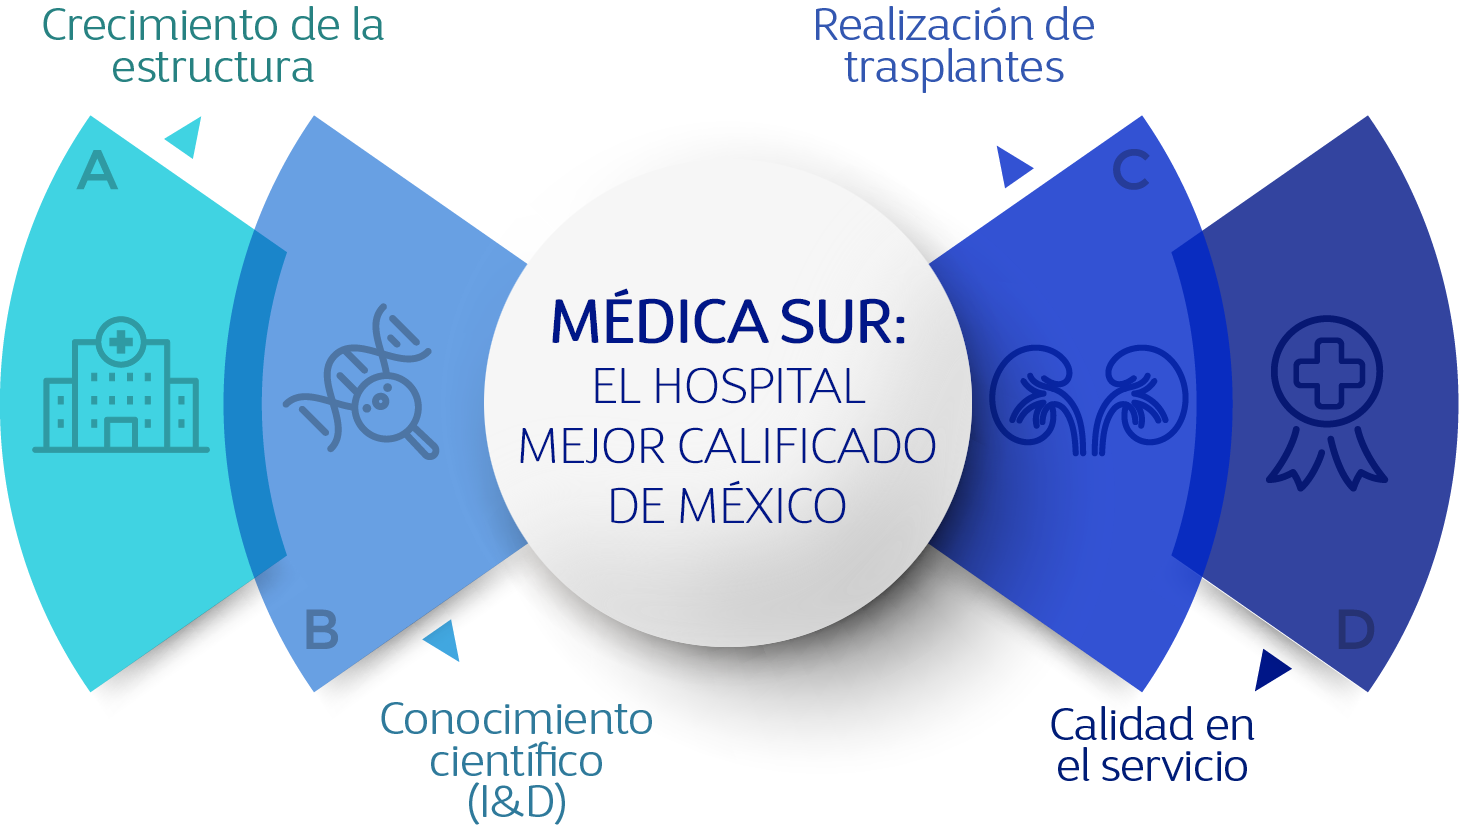 El hospital mejor calificado de México